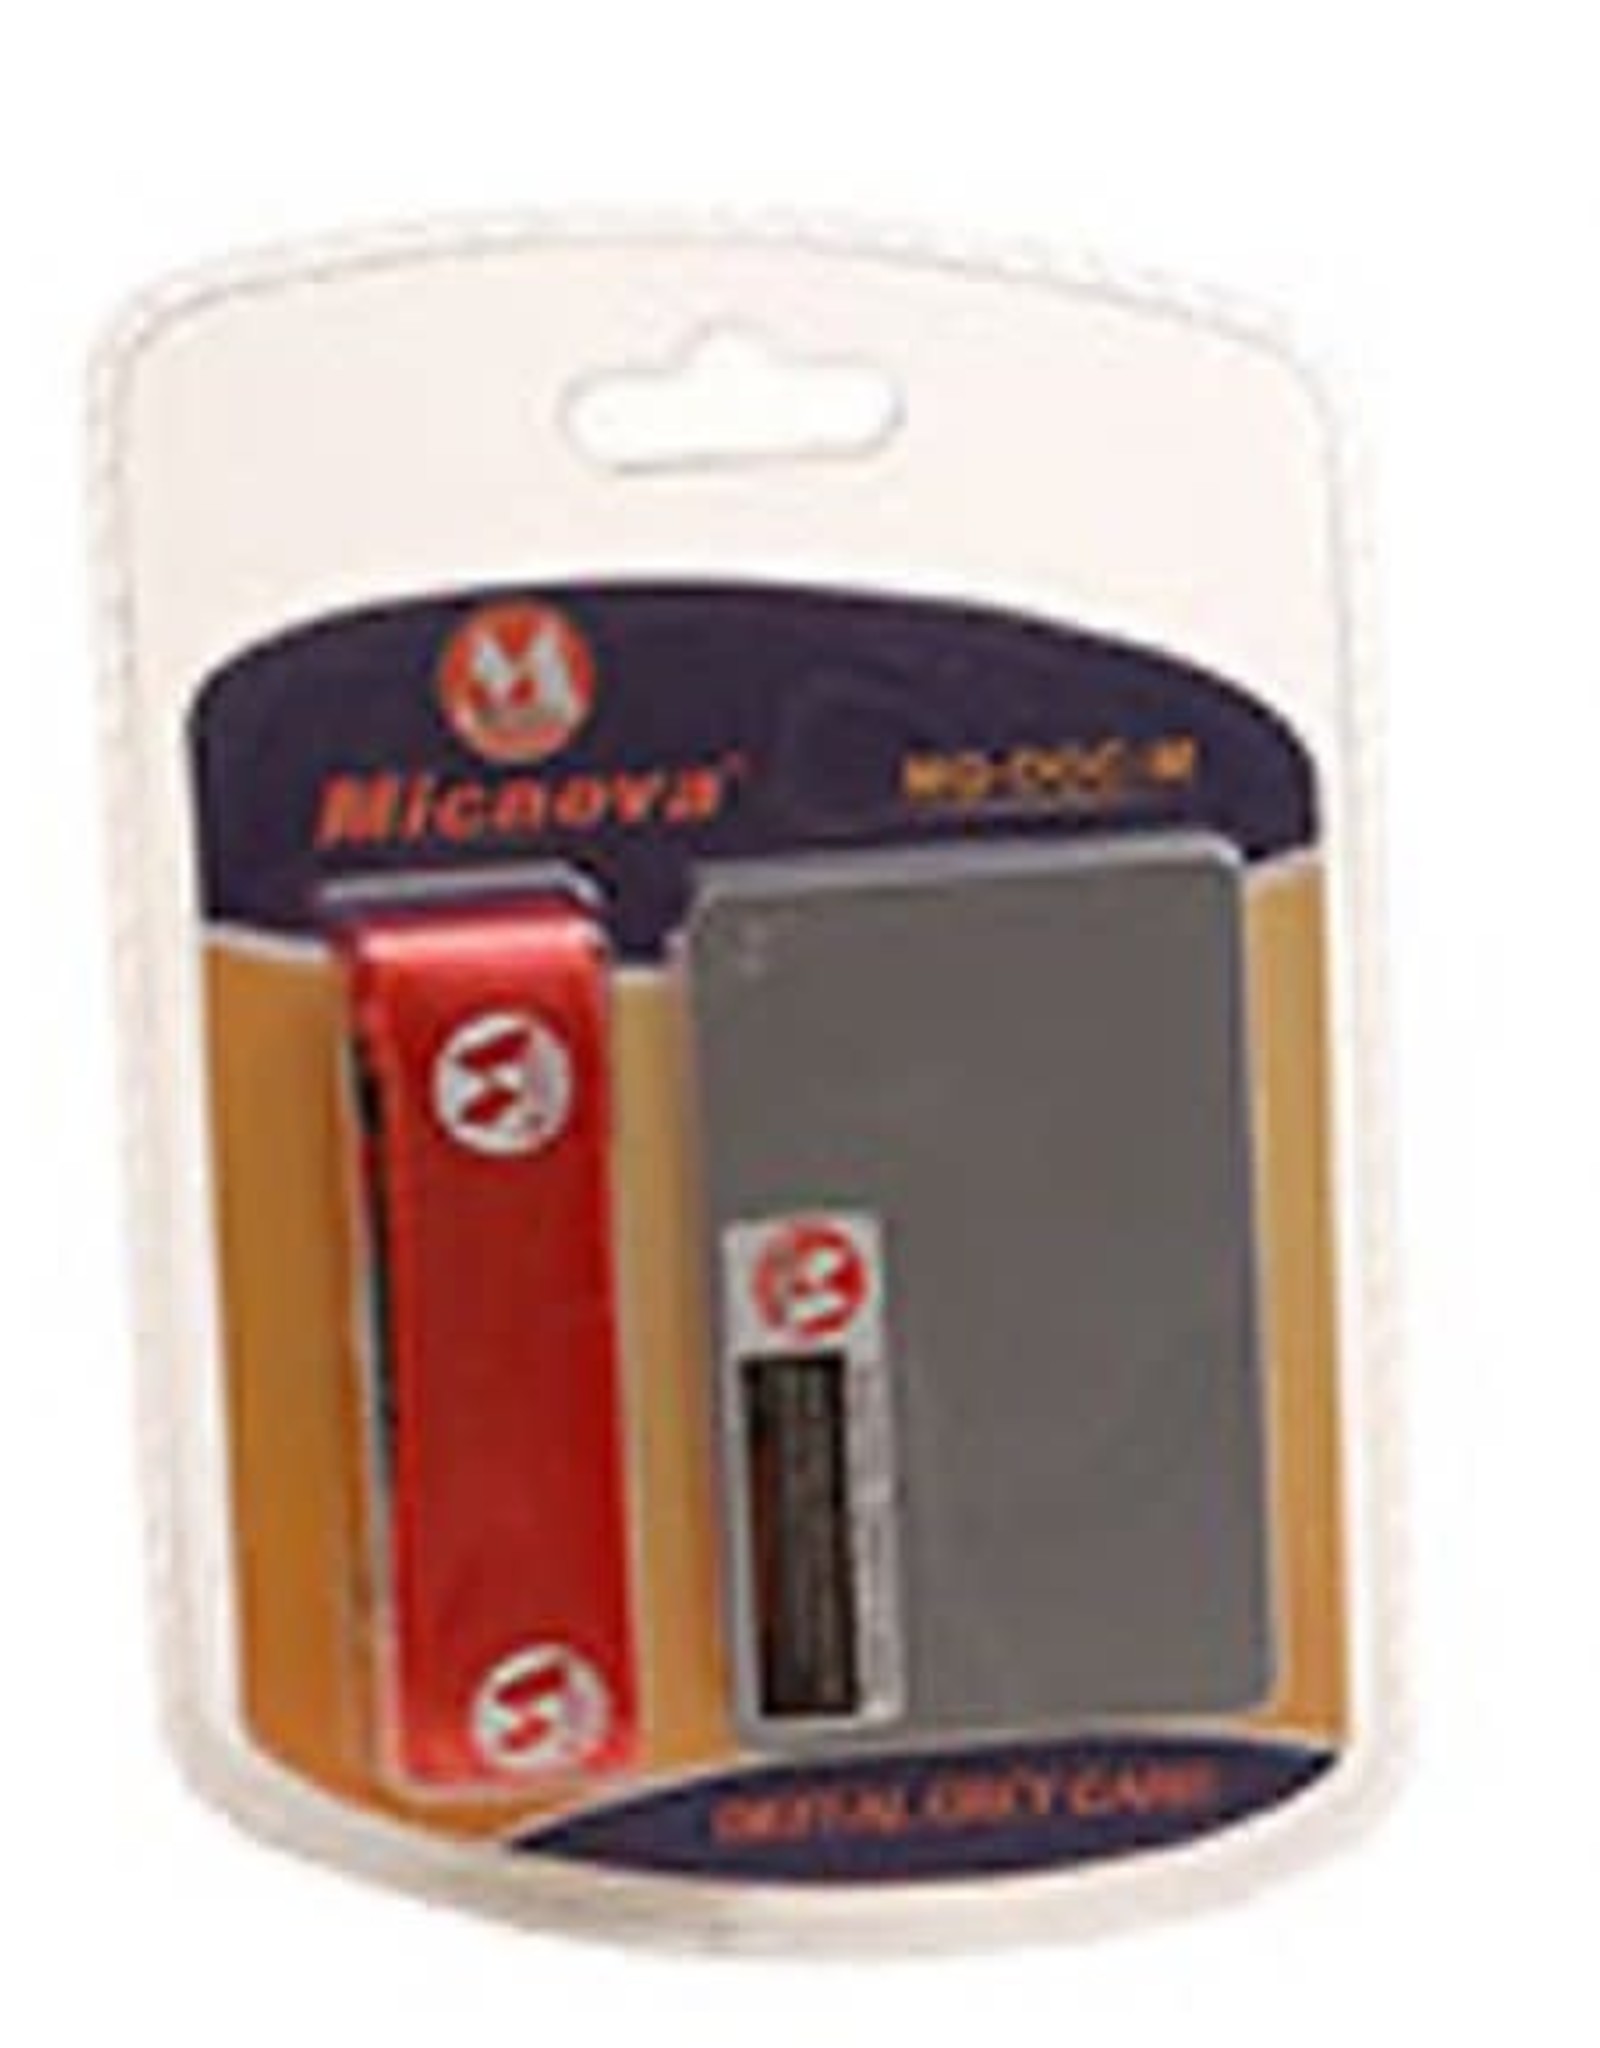 Micnova Micnova Digital Grey Card